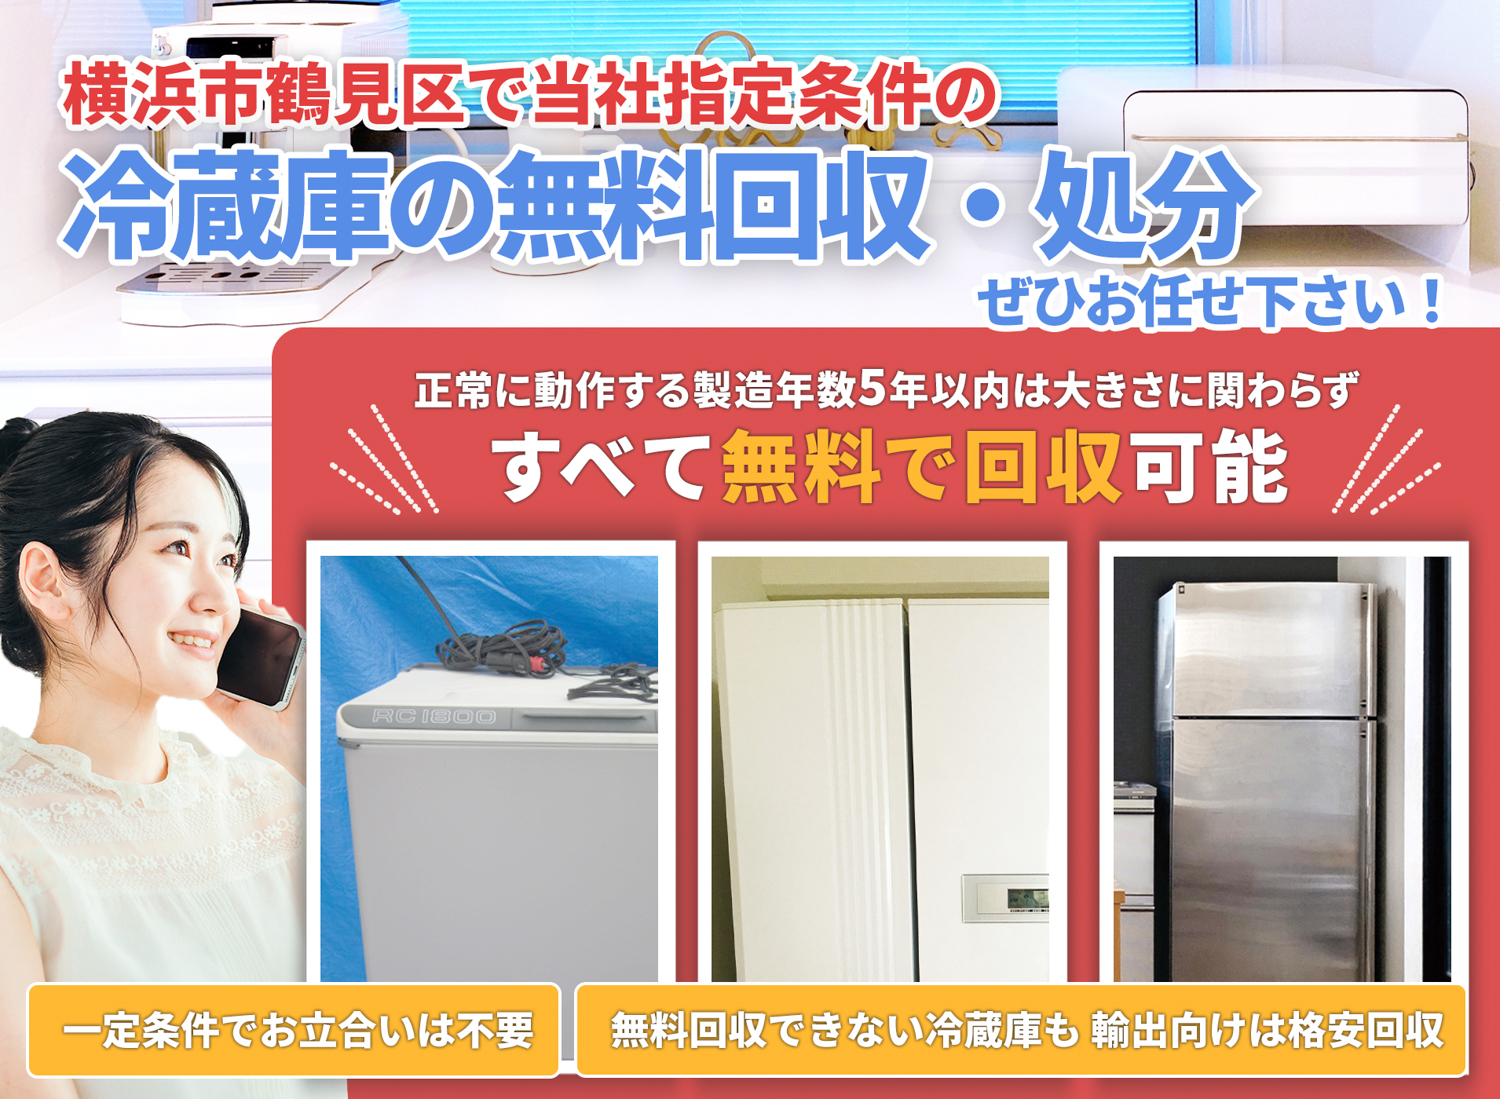 横浜市鶴見区で丁寧で安心できる冷蔵庫無料回収処分隊の冷蔵庫無料回収サービス